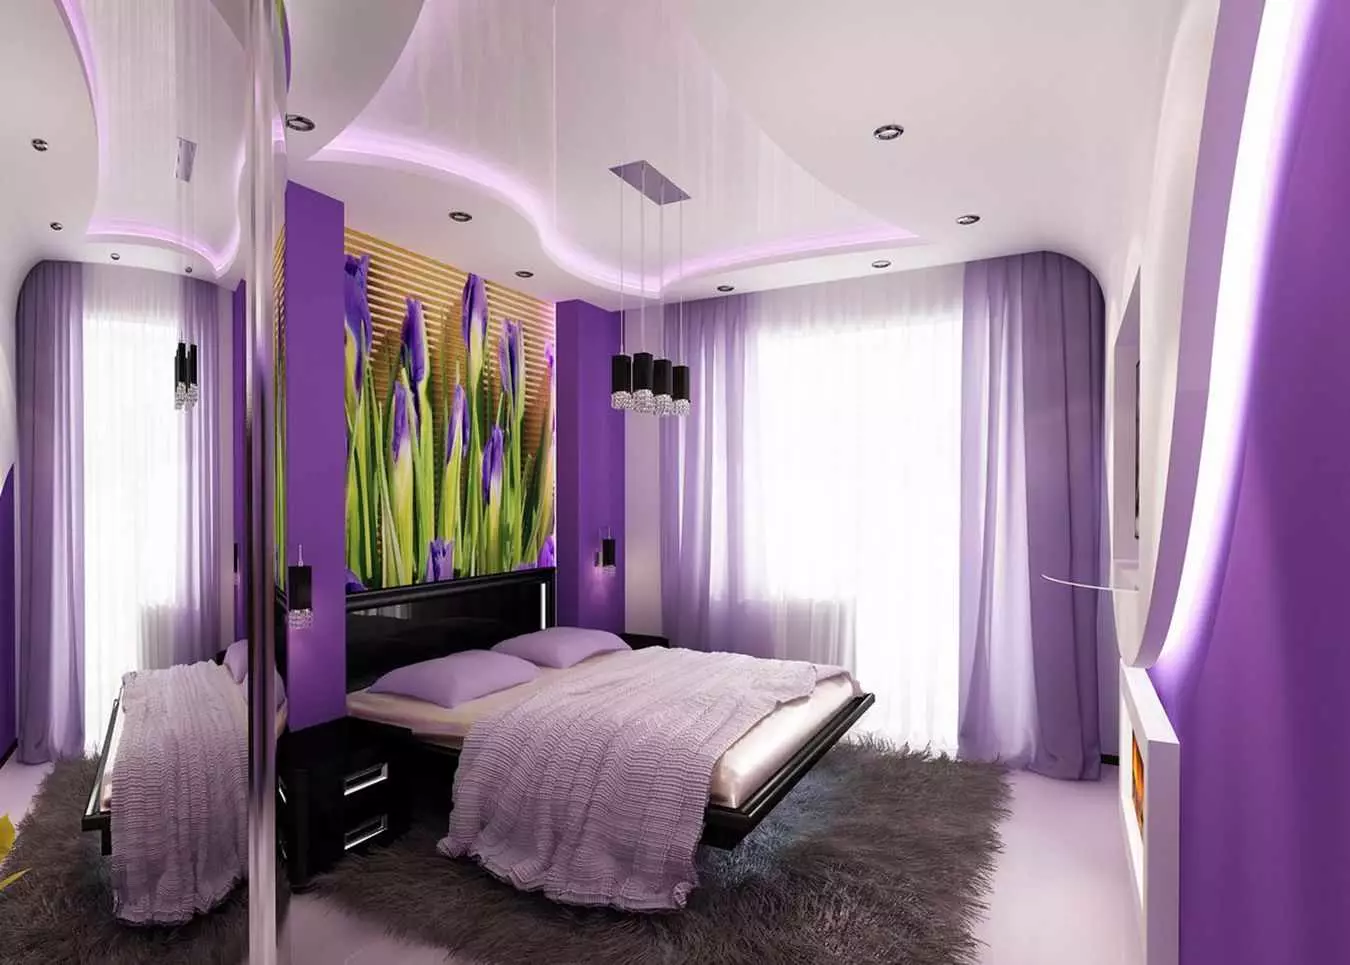 Lilac turu (95 foto): Apa nada wallpaper lan langsir kanggo milih? Gagasan kanggo desain interior, kombinasi karo warna lavender lan putih. Apa perabotan digabungake? 9881_69